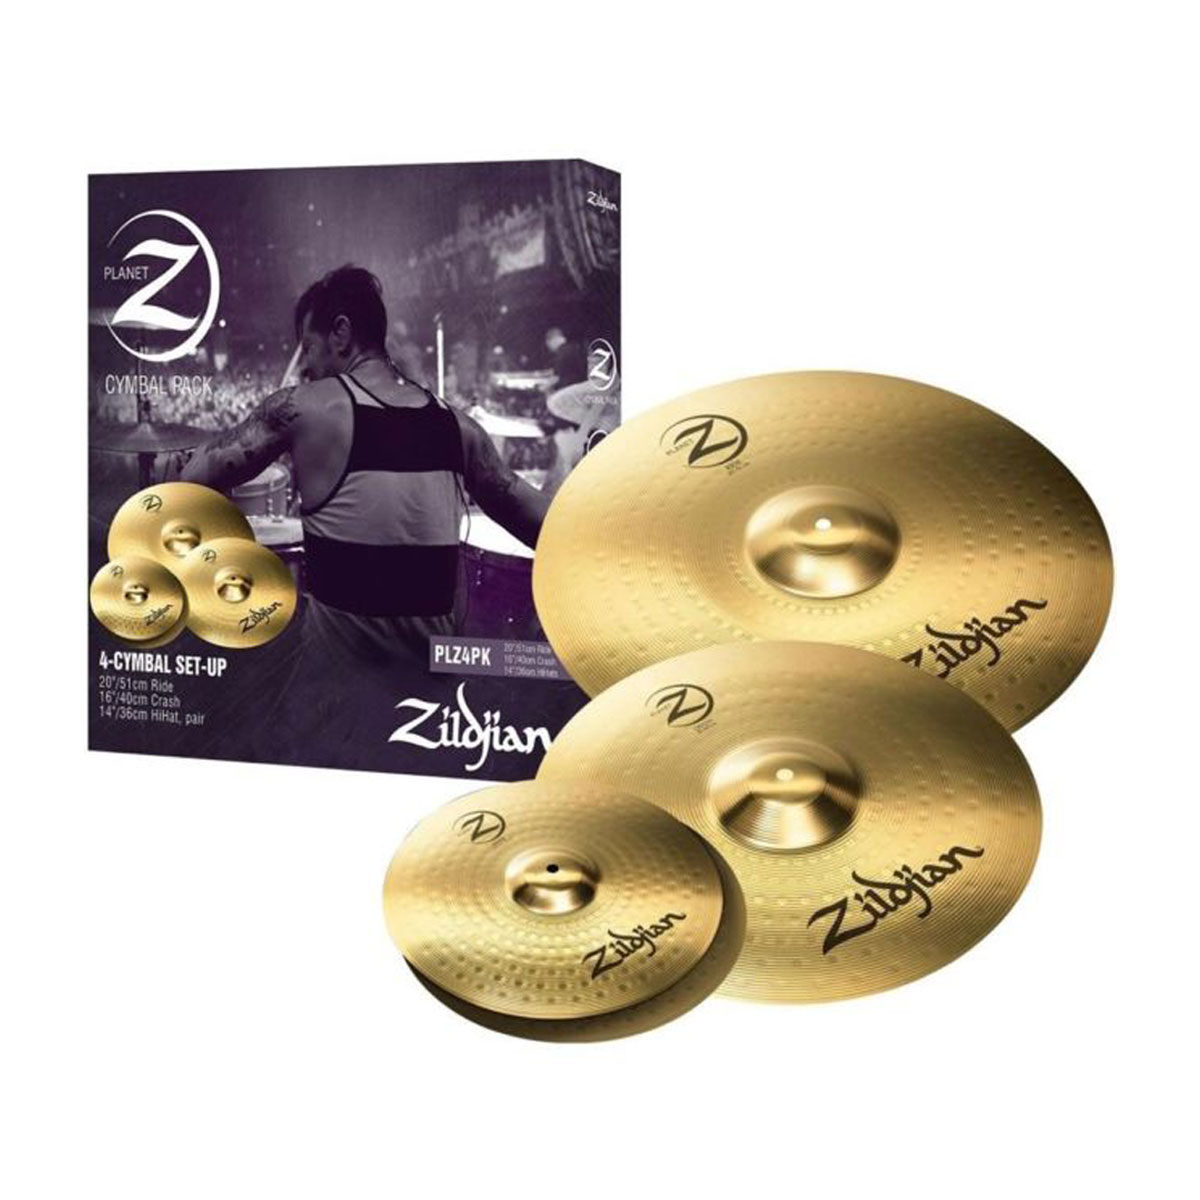 Pack de cymbales Planet Z 14, 16 et 20